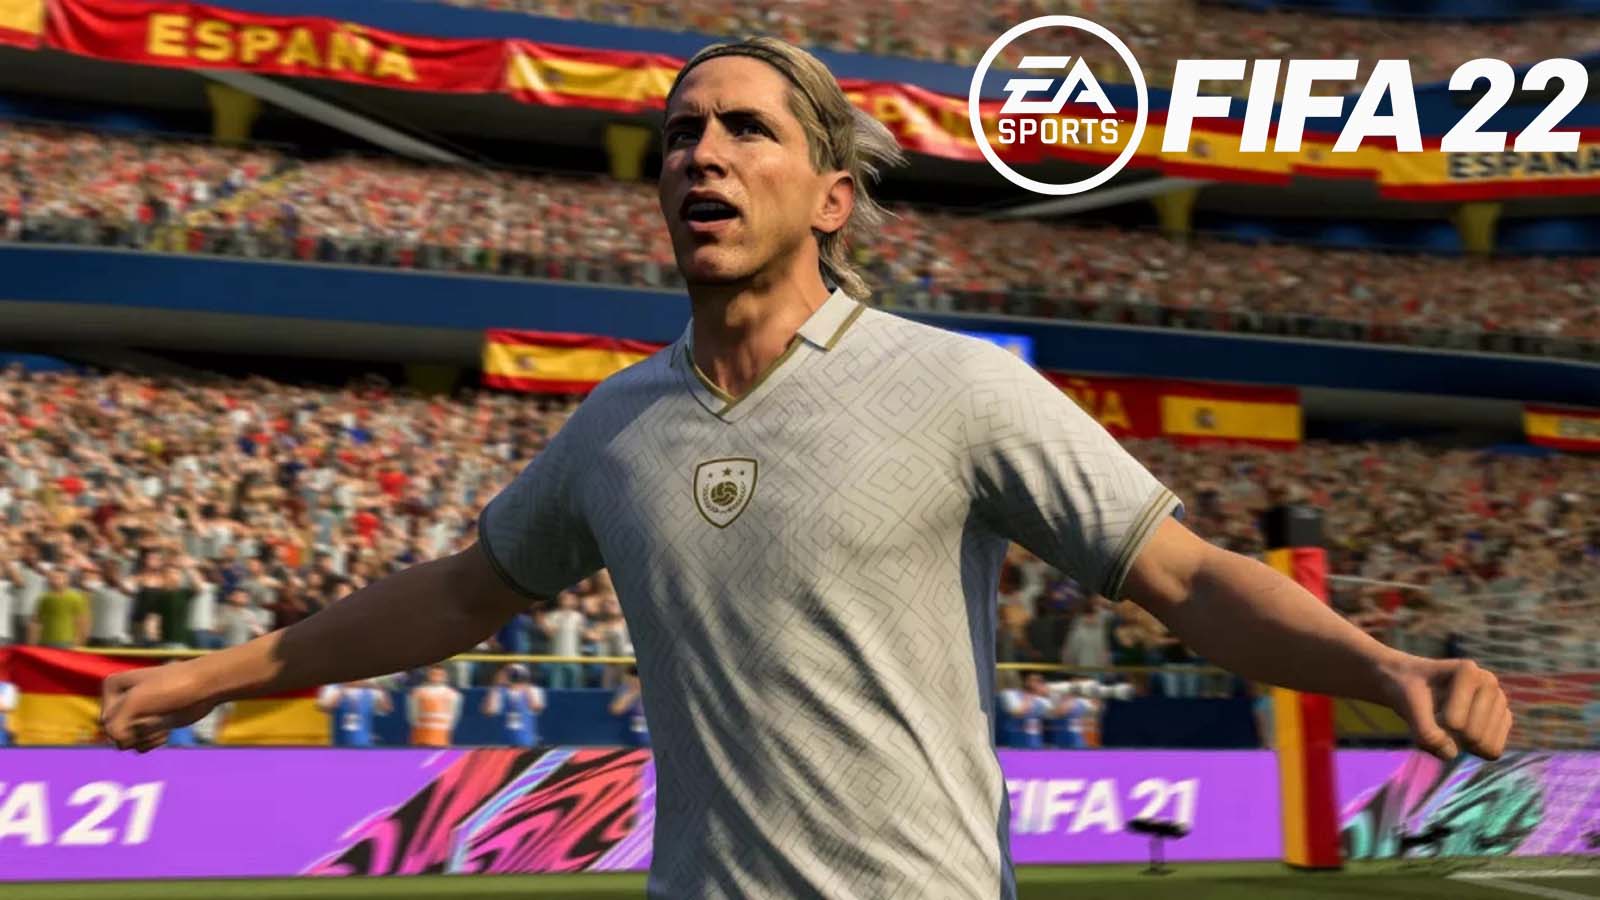 FIFA 22 ICON Fernando Torres